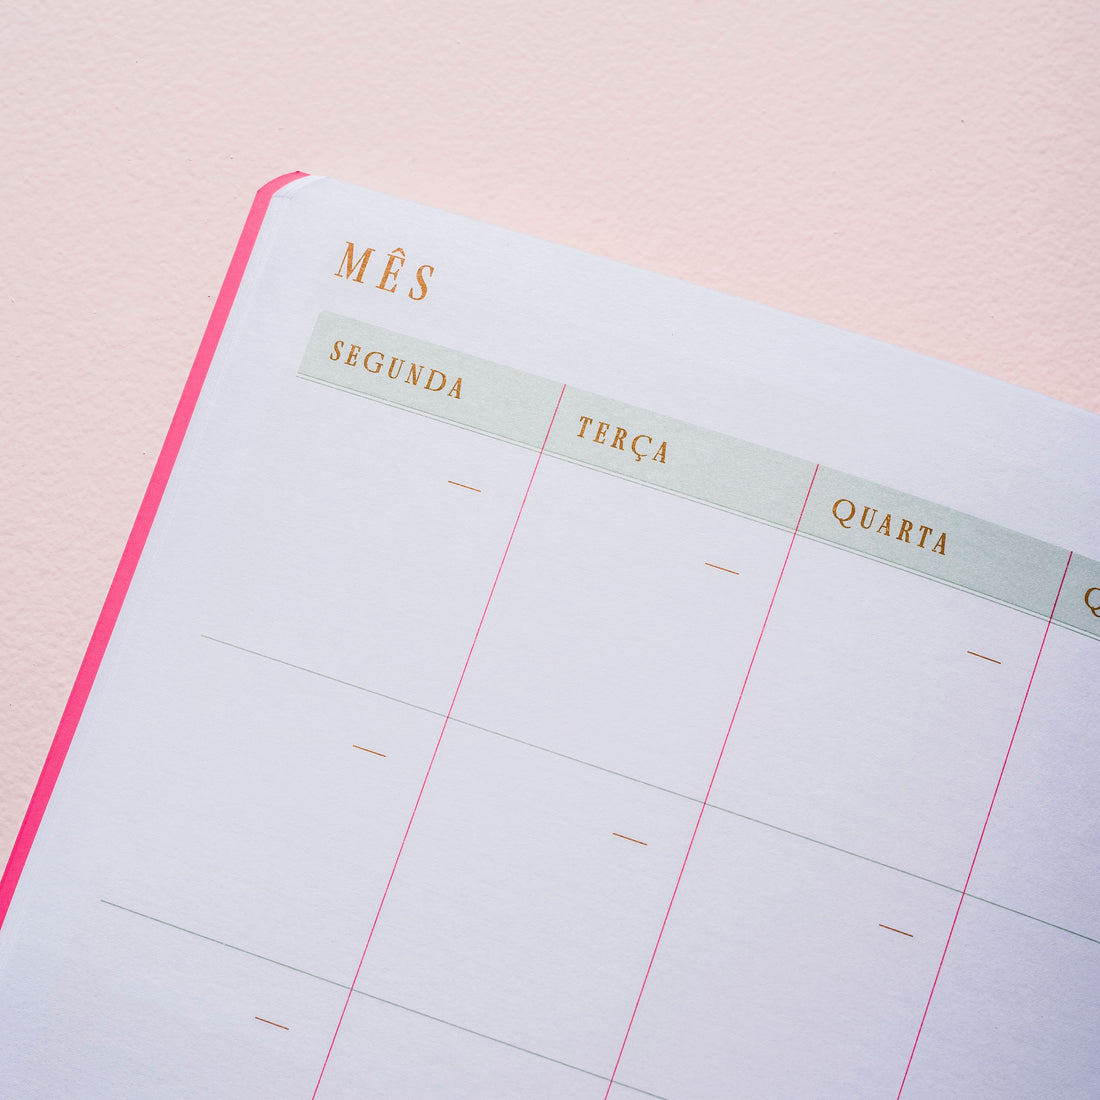 detalhe da visão mensal do caderno de planejamento mensal sobre fundo liso rosa